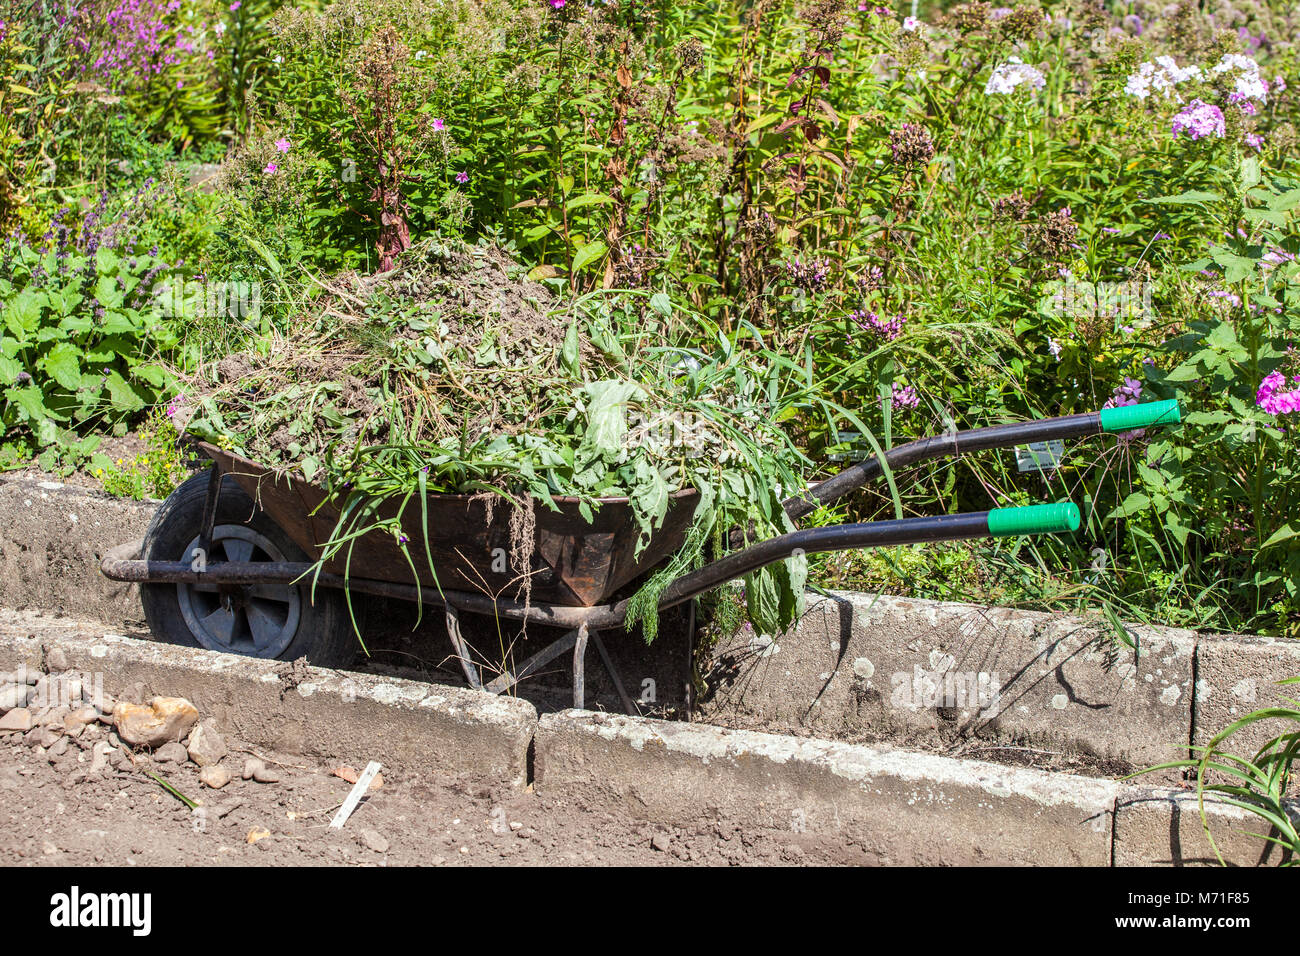 Carretilla de mano lleno de maleza, jardín desmalezado Foto de stock